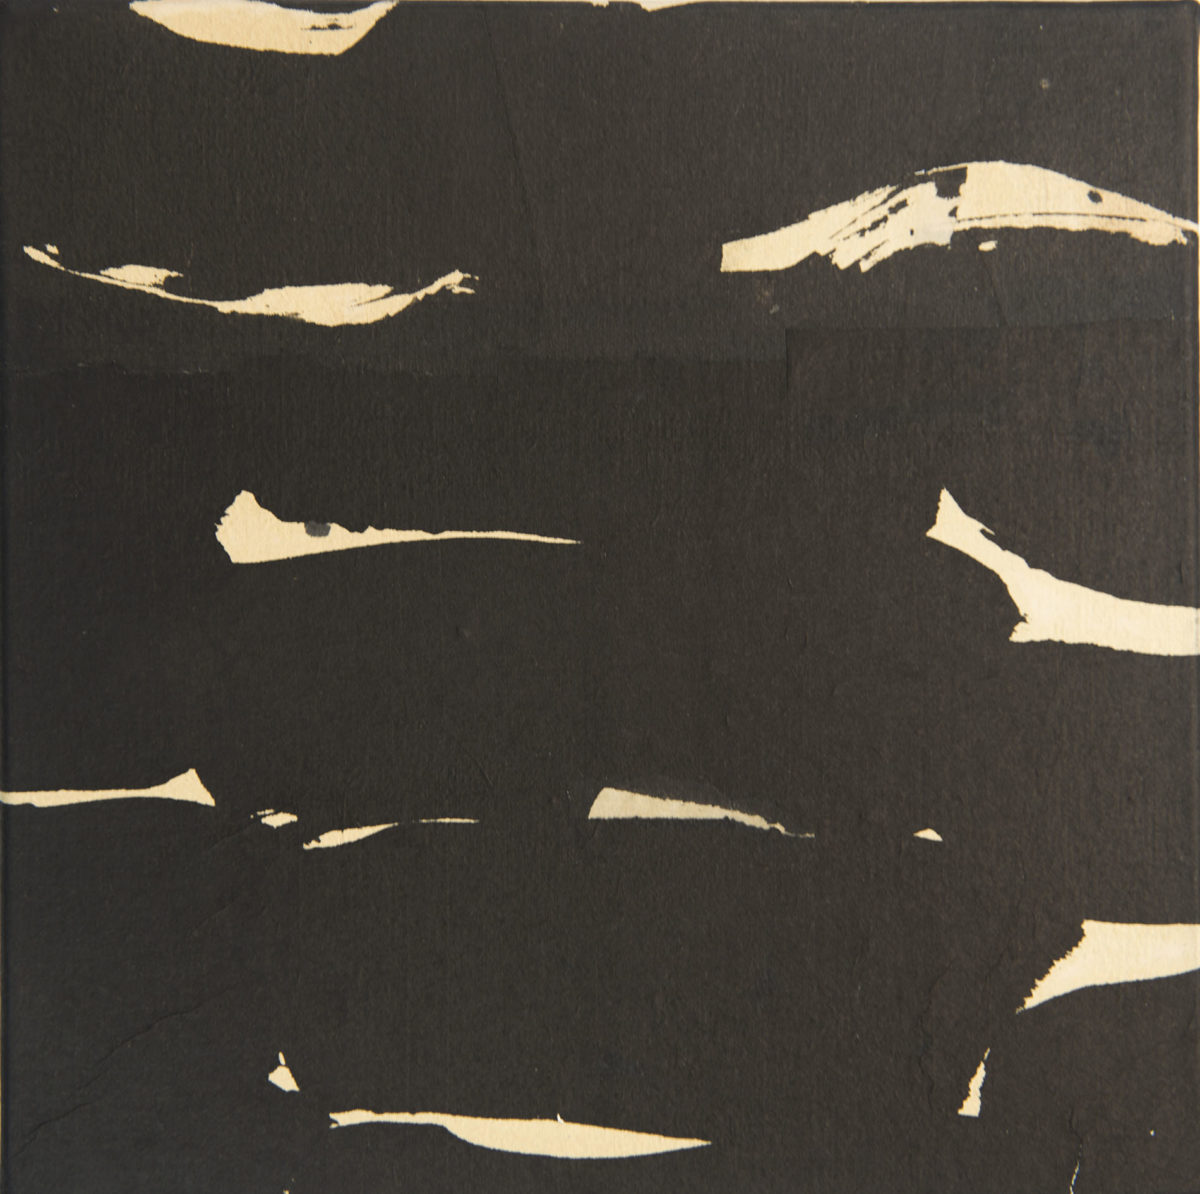 LÉVY Dominique, Mouvement 2, 2018, Encre sur papier marouflé sur toile, 35x35cm, à contre-courant